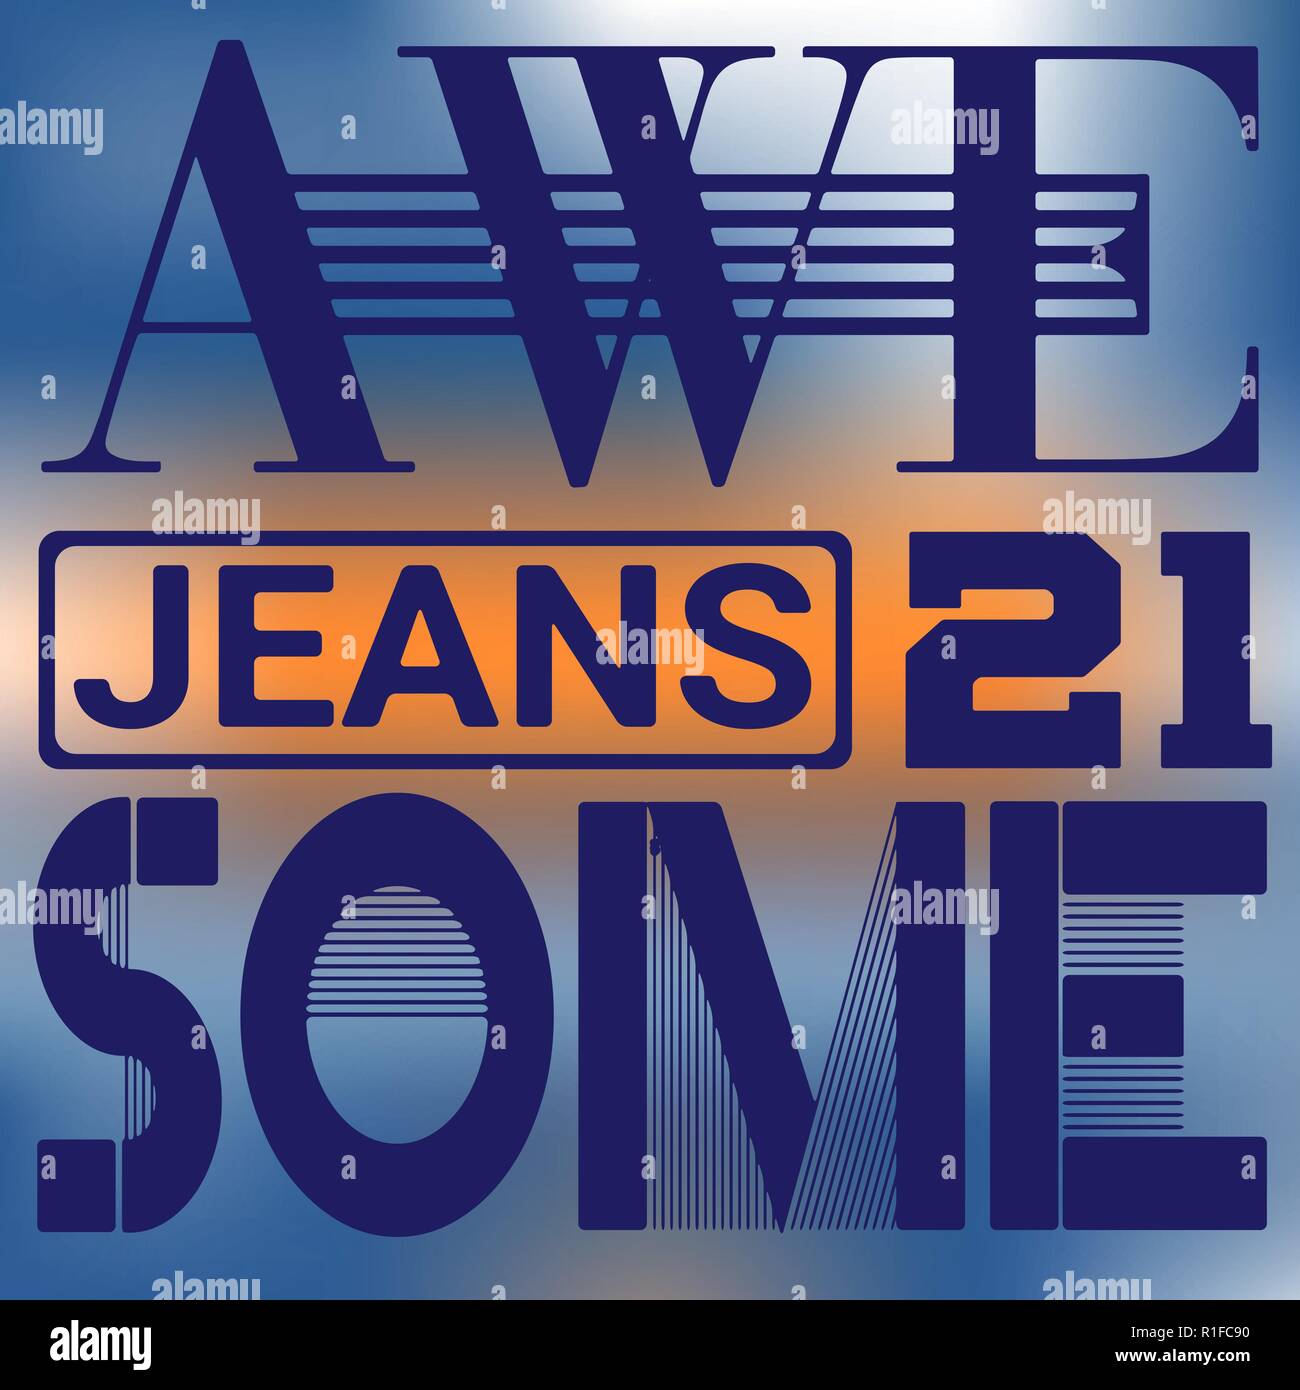 Awesome Jeans venti uno sport agonistico tipografia, t-shirt graphics, vettori Illustrazione Vettoriale